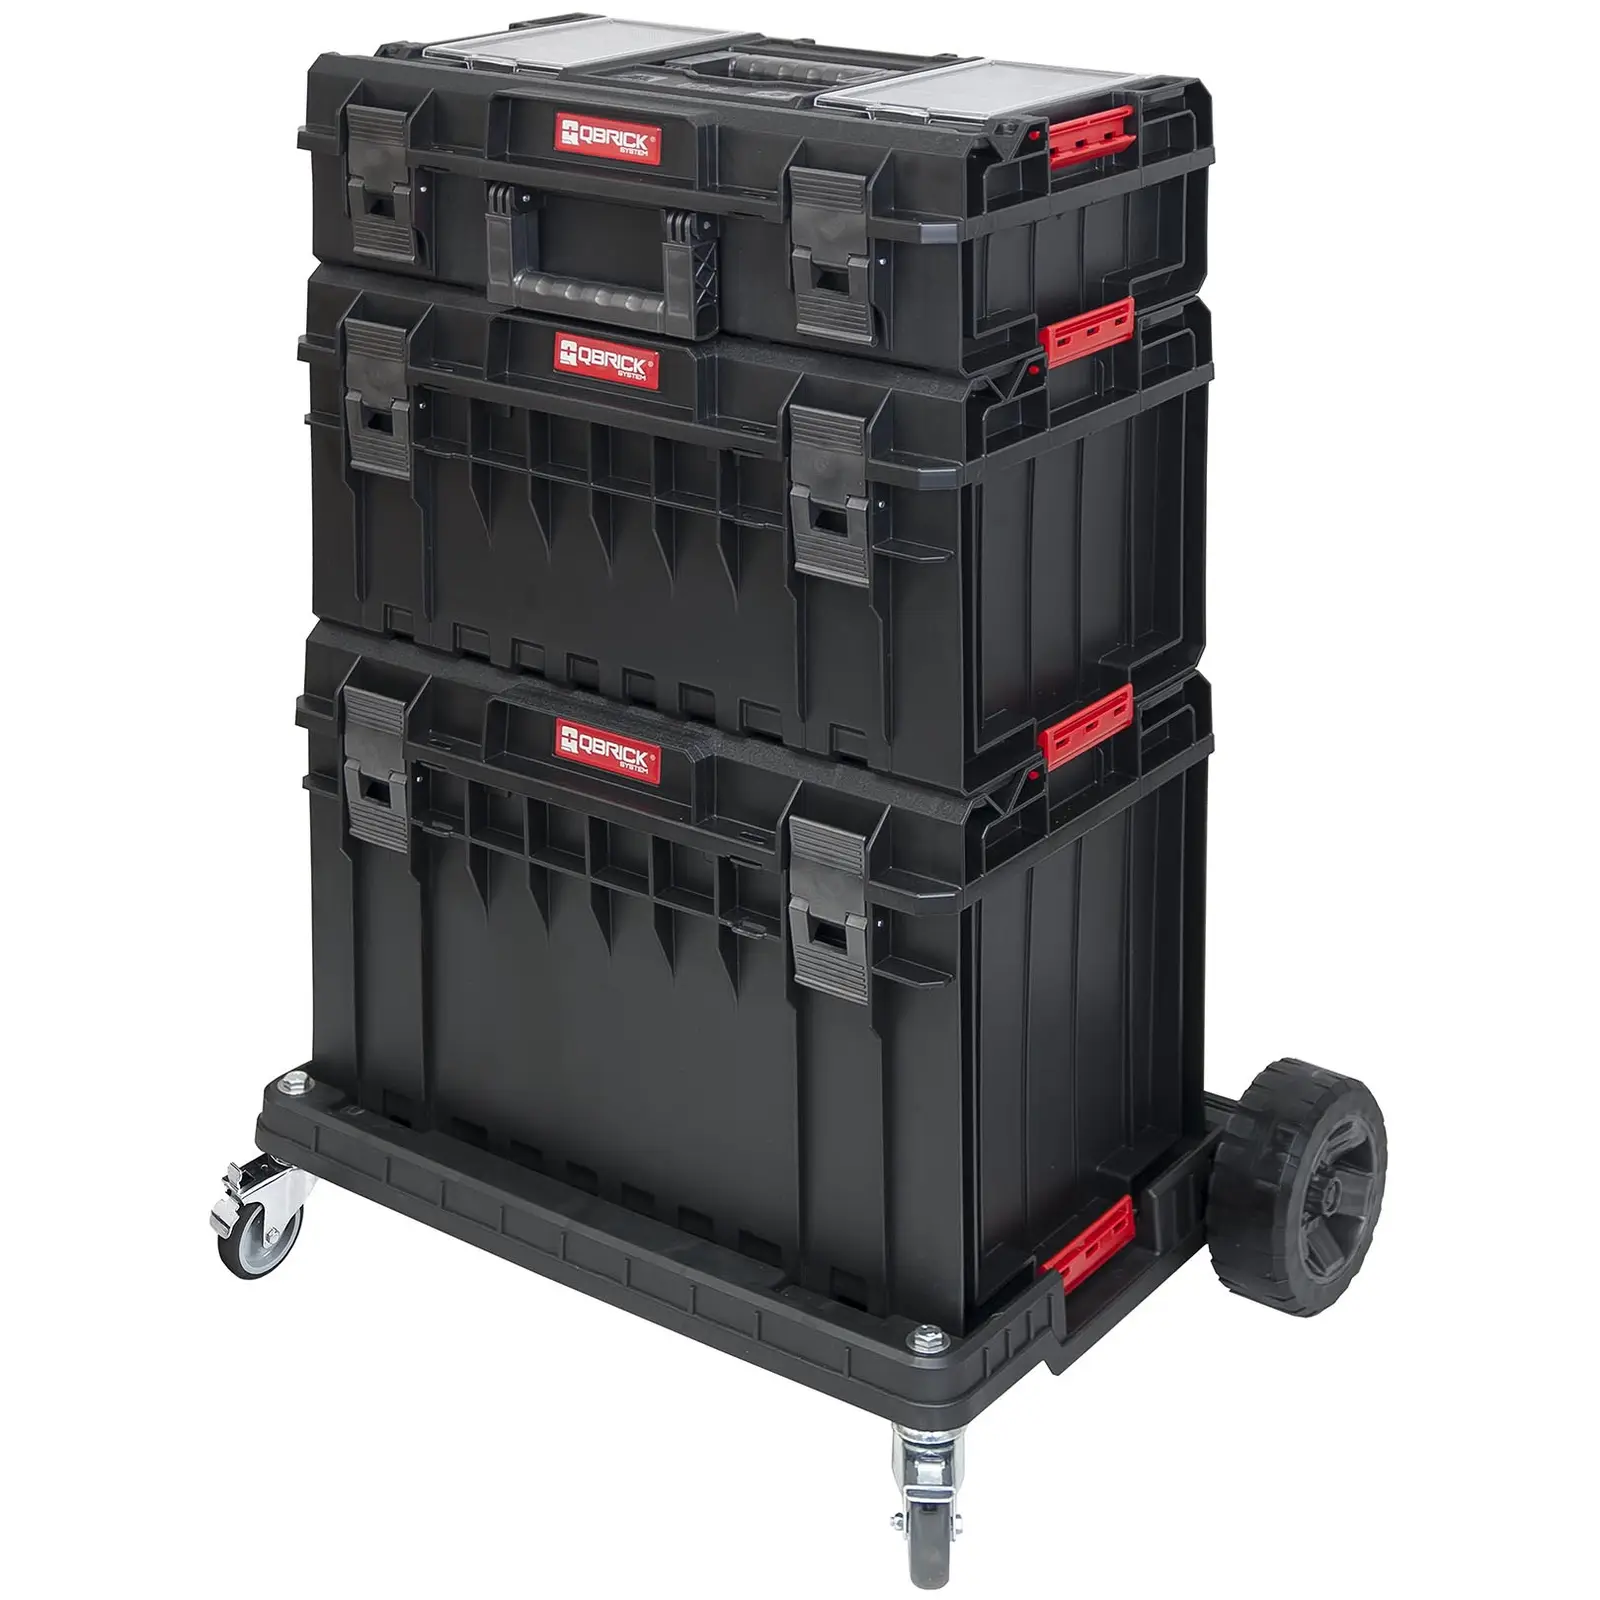 Mobilní kufr na nářadí – System One Profi – 3 kufry – 1 přepravní vozík - Kufry a boxy na nářadí Qbrick System